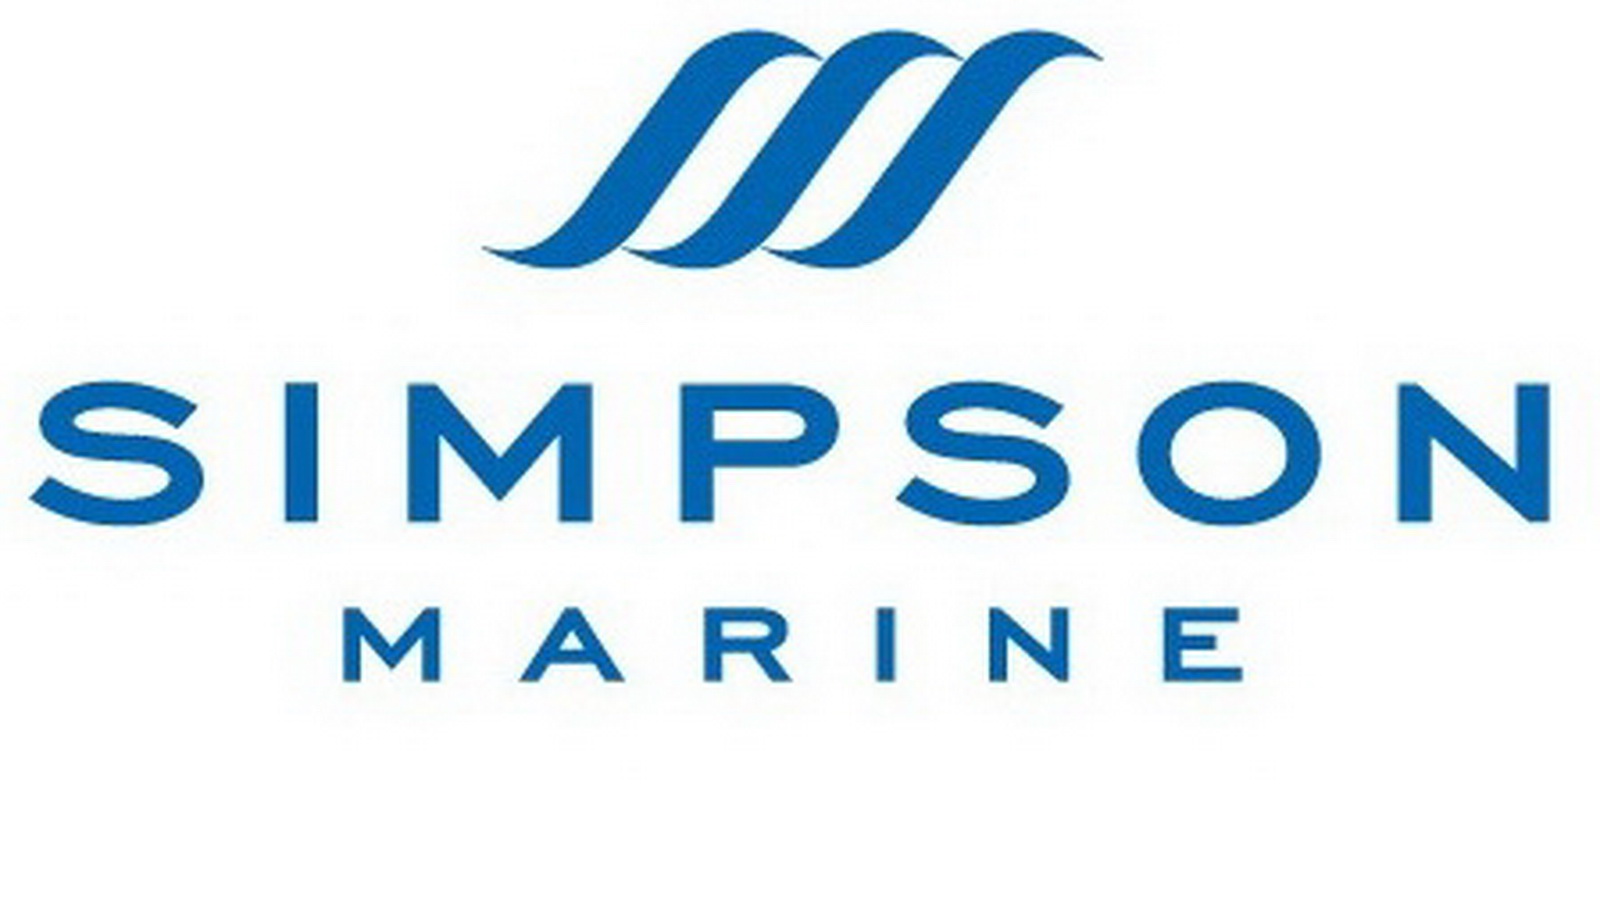 Simpson Marine